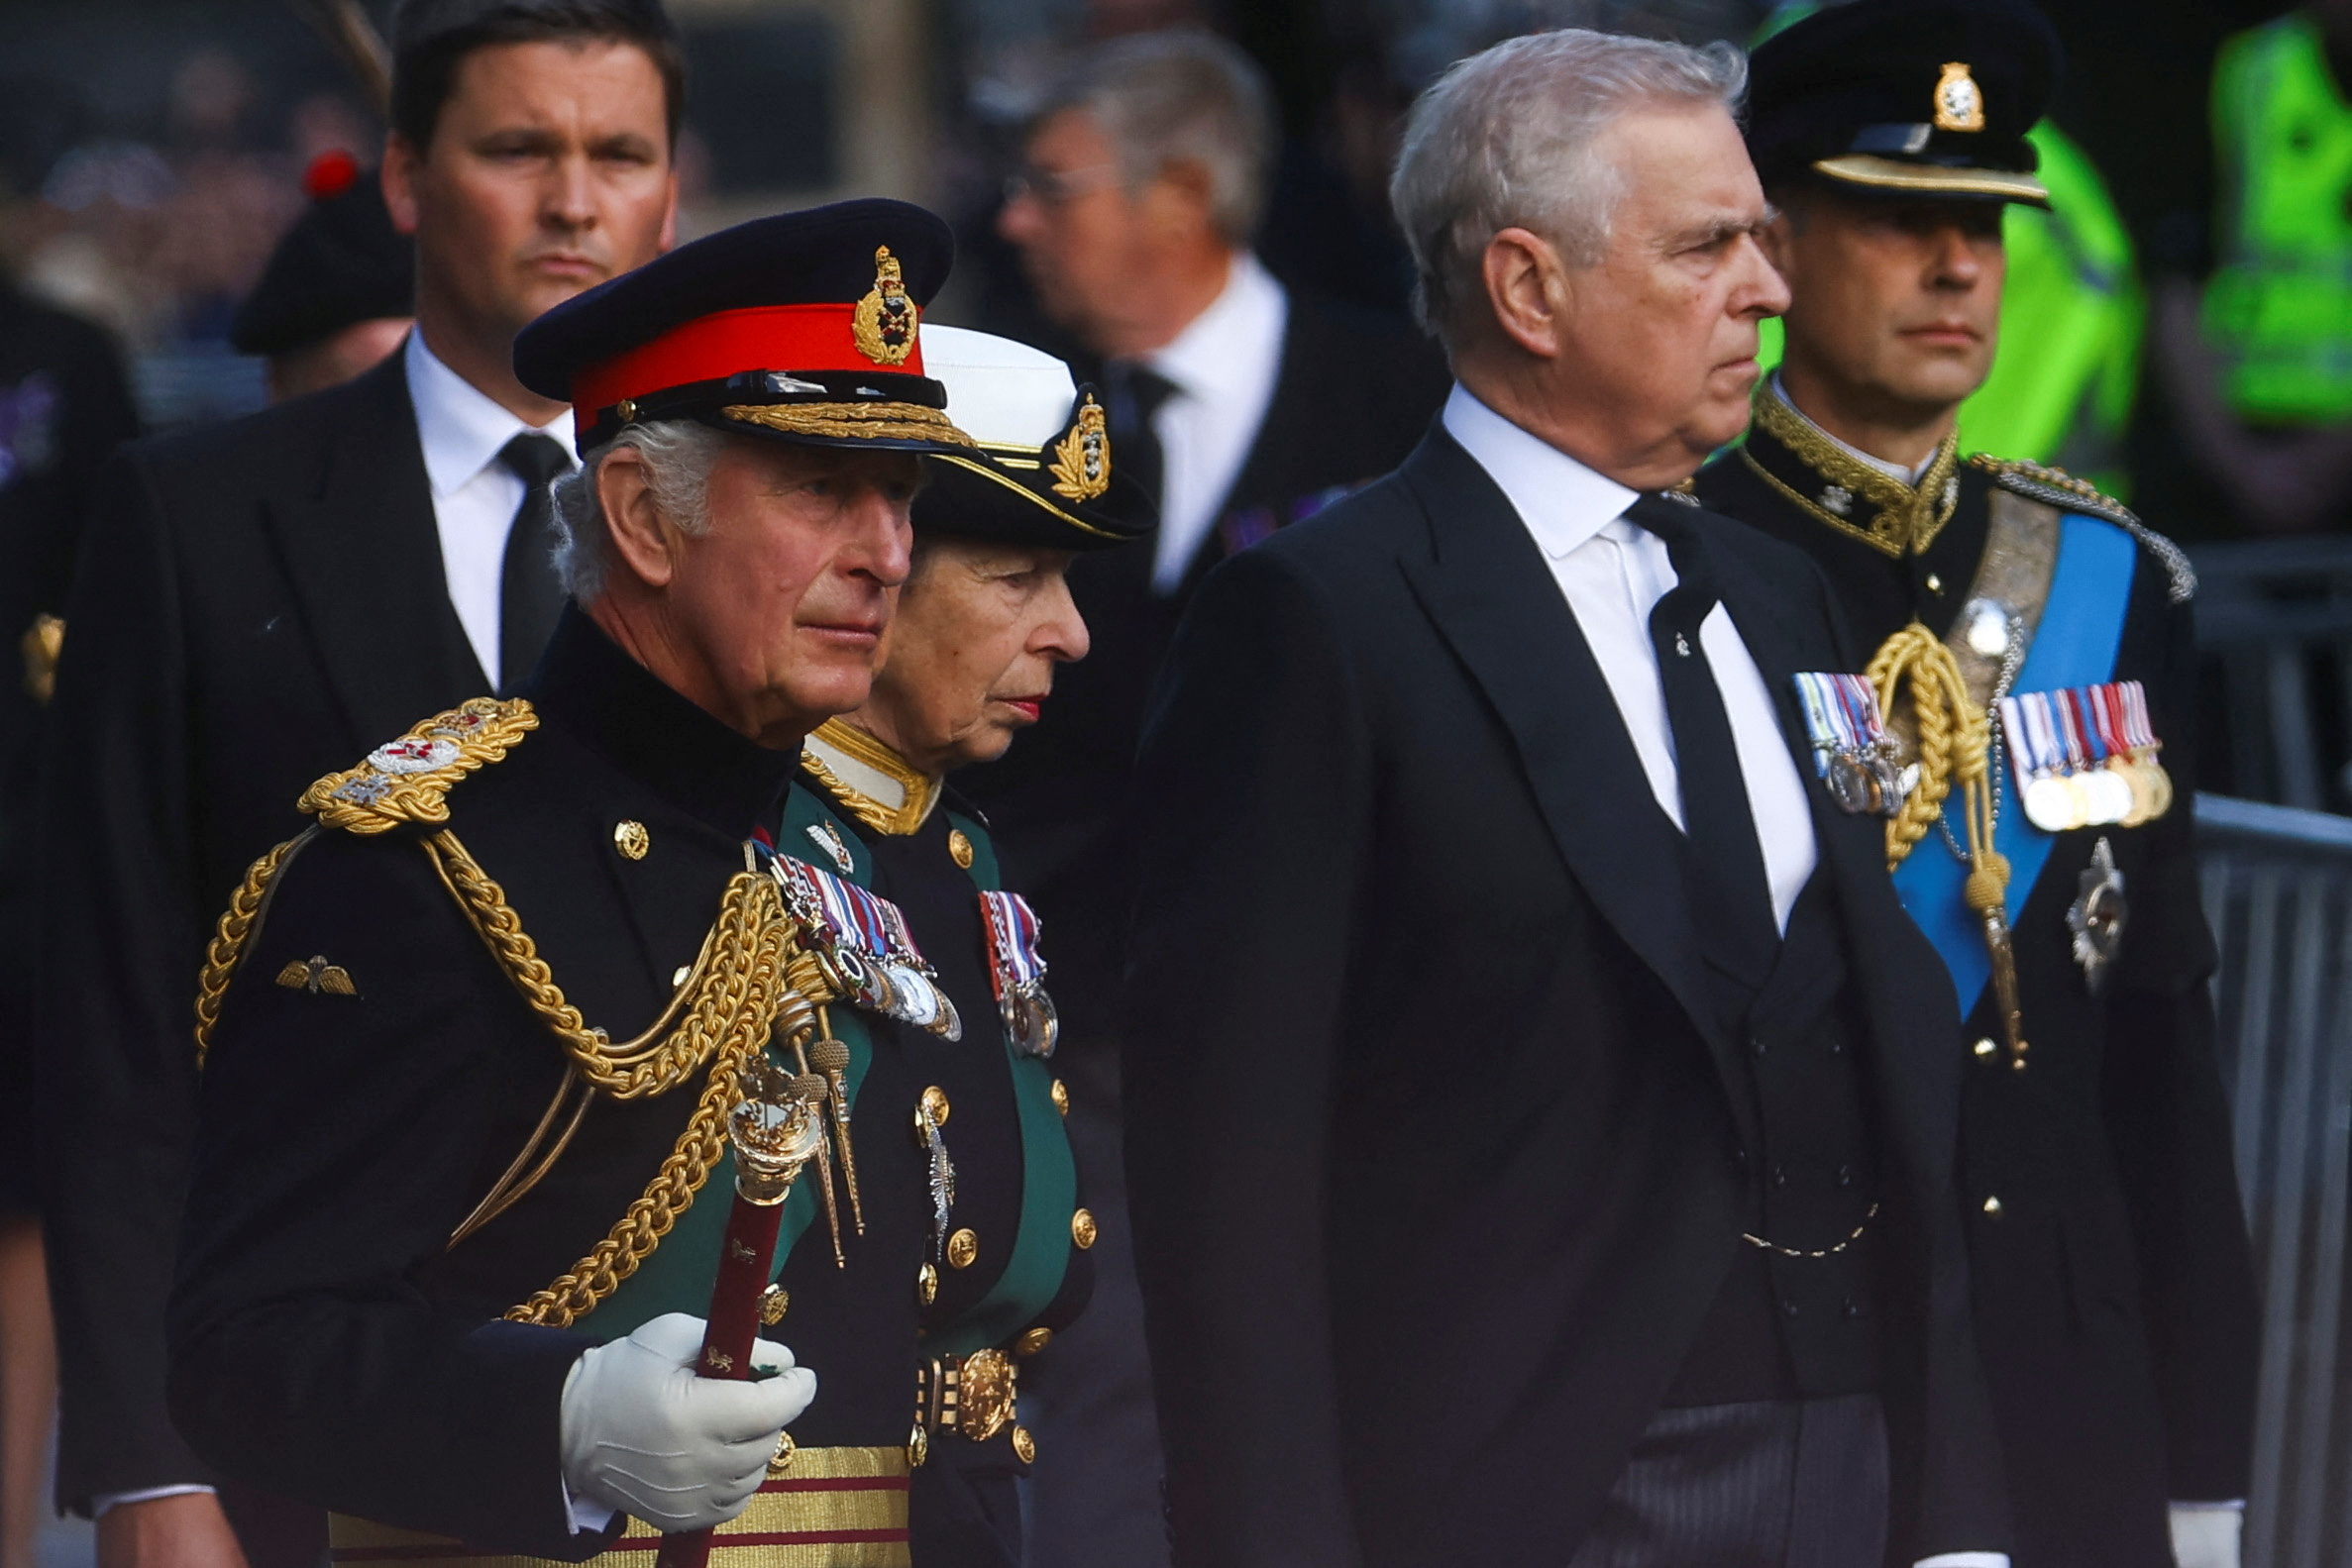 Ο πρίγκιπας Άντριου «ονειρεύεται» επιστροφή στα βασιλικά καθήκοντα αφού αποσύρθηκαν οι κατηγορίες για σεξουαλική κακοποίηση